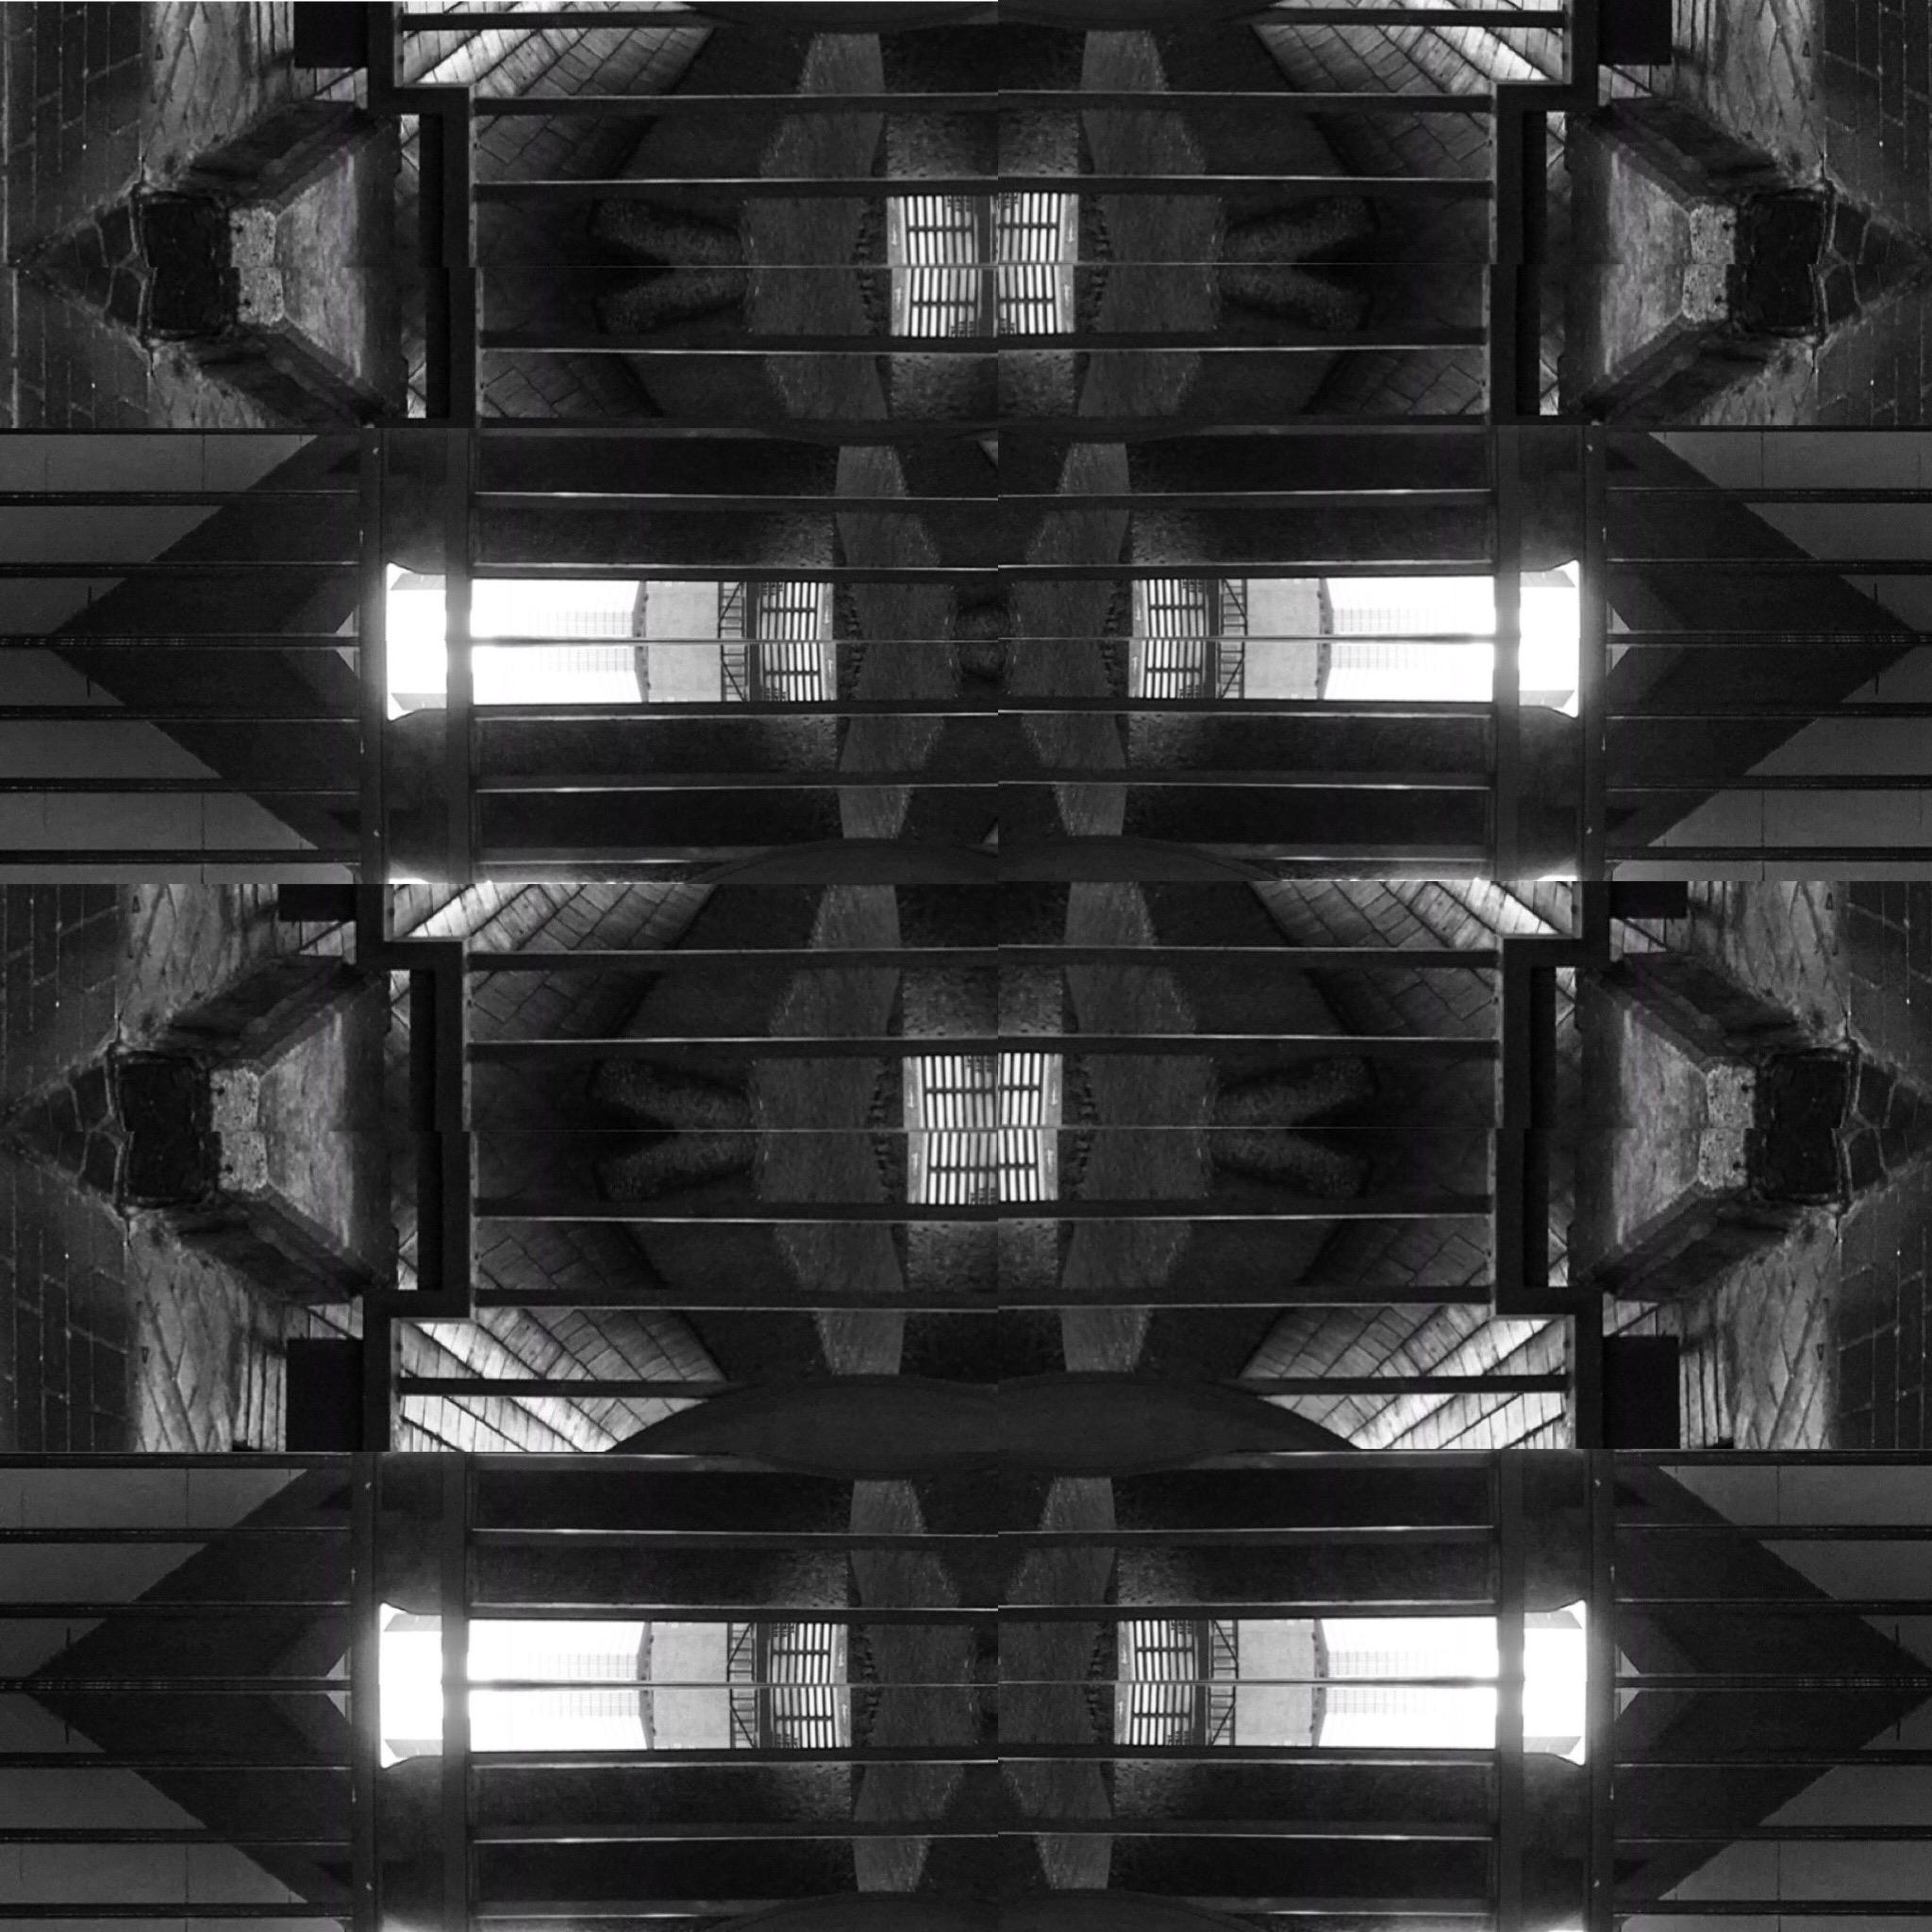 Brutalismus / London Barbican Centre No 6 – Schwarz-Weiß-Fotografie, 2019